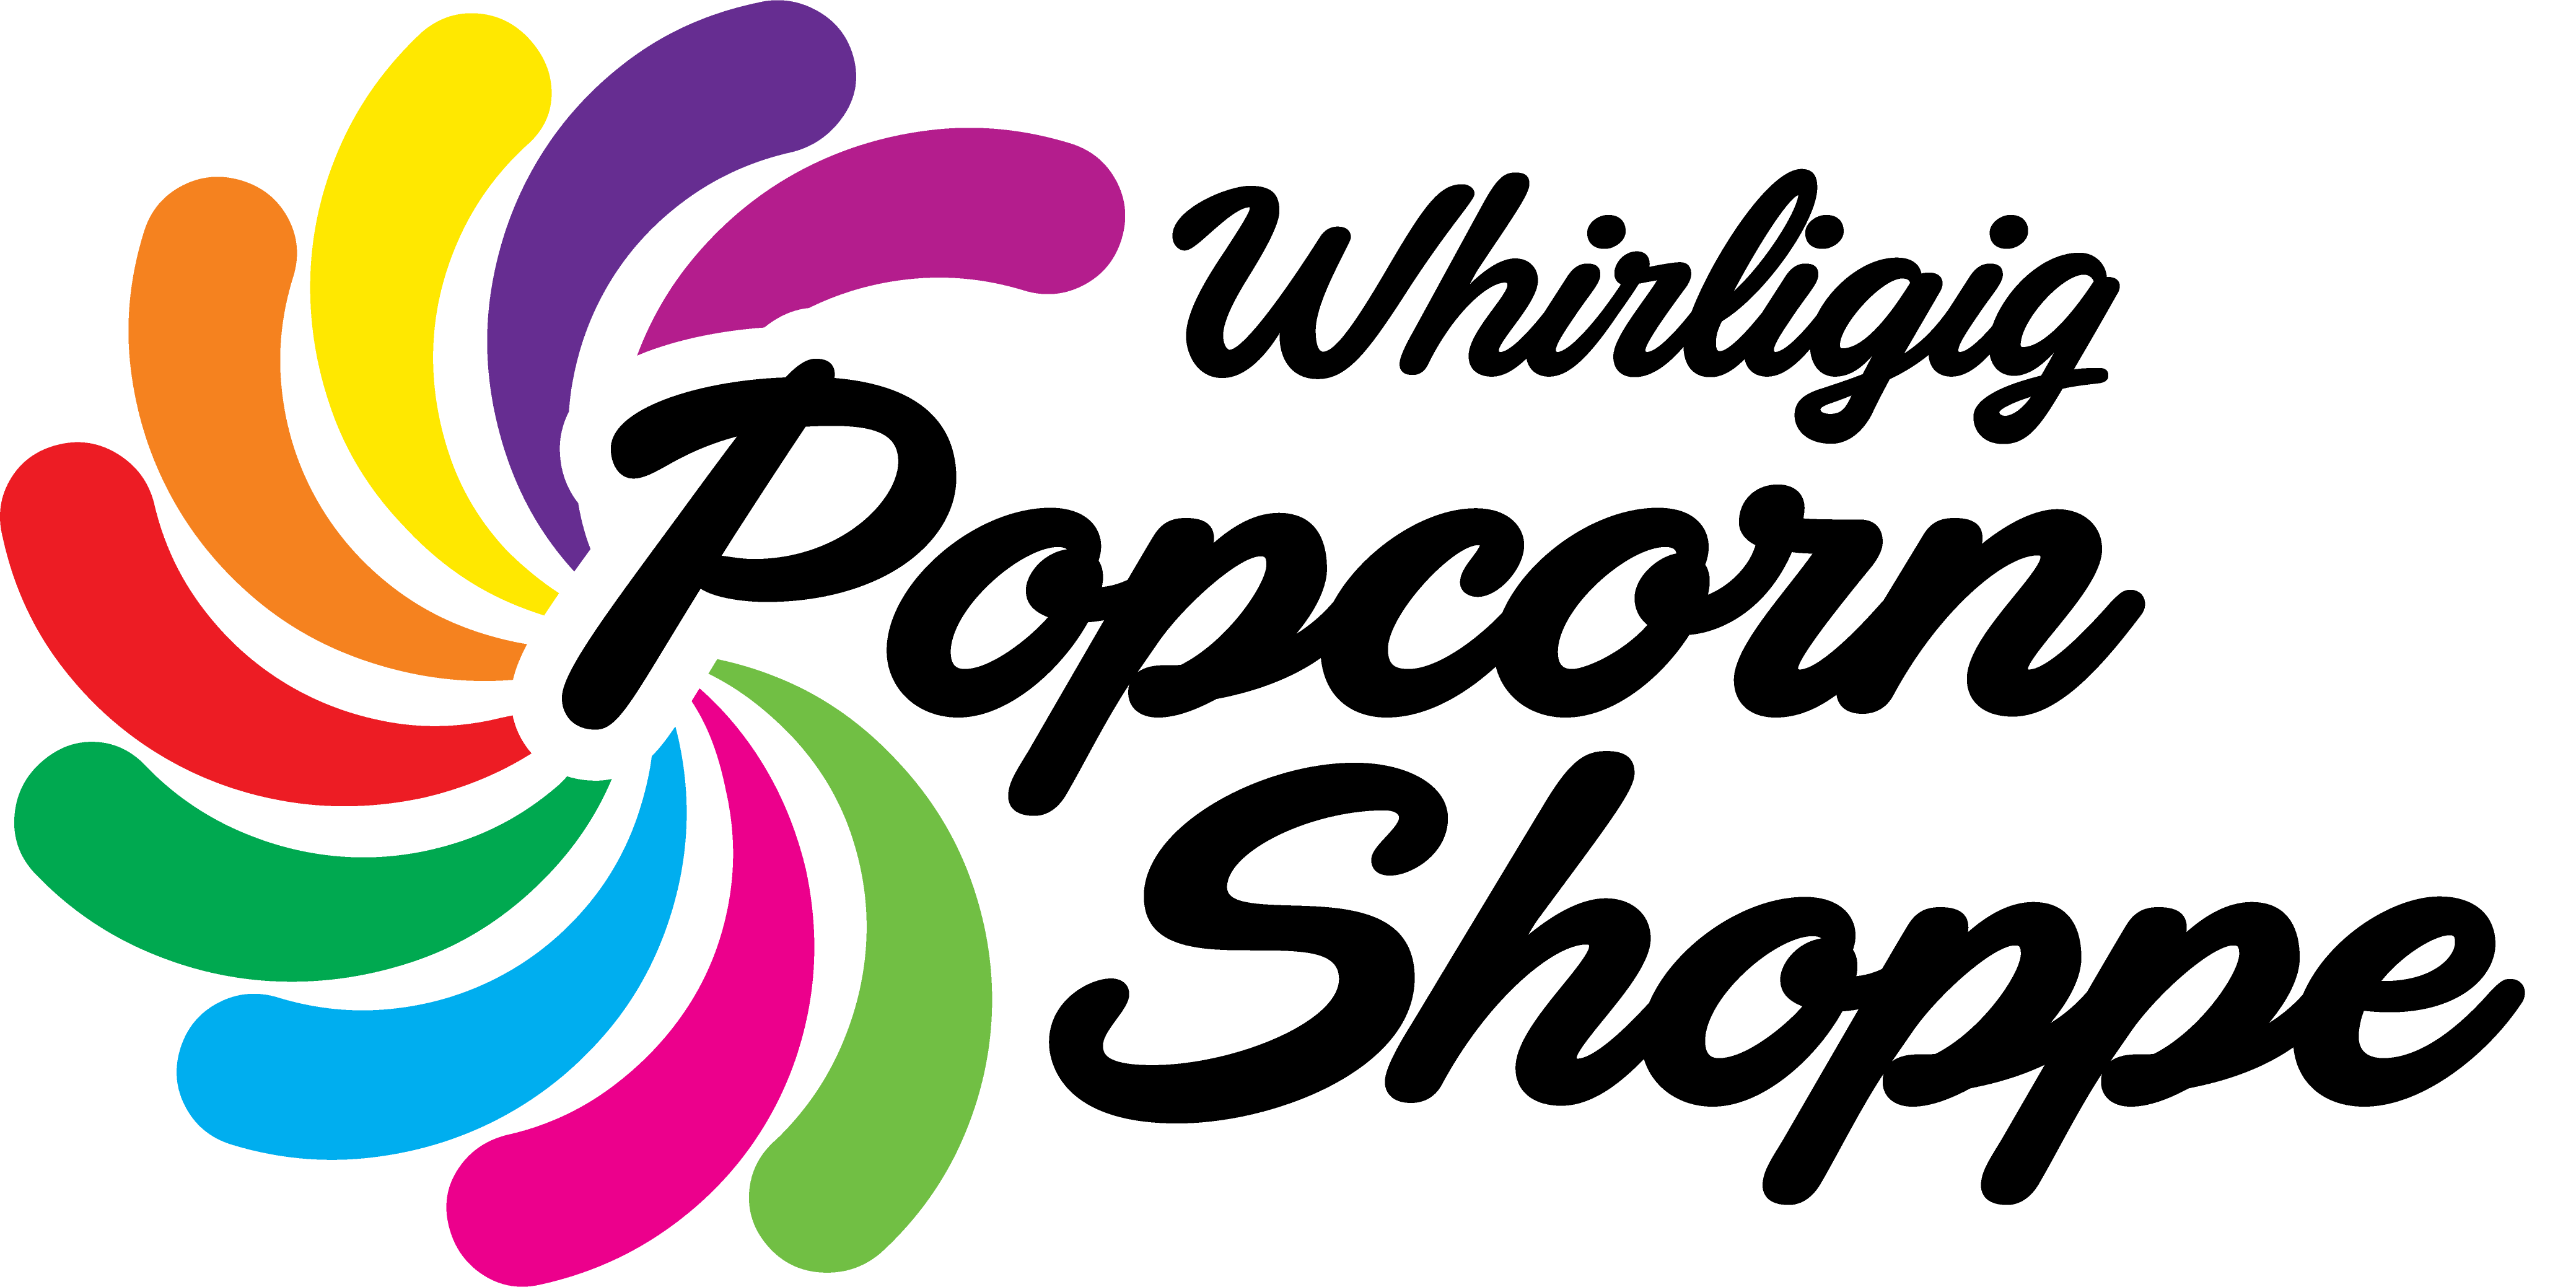 Whirligig Popcorn Shoppe